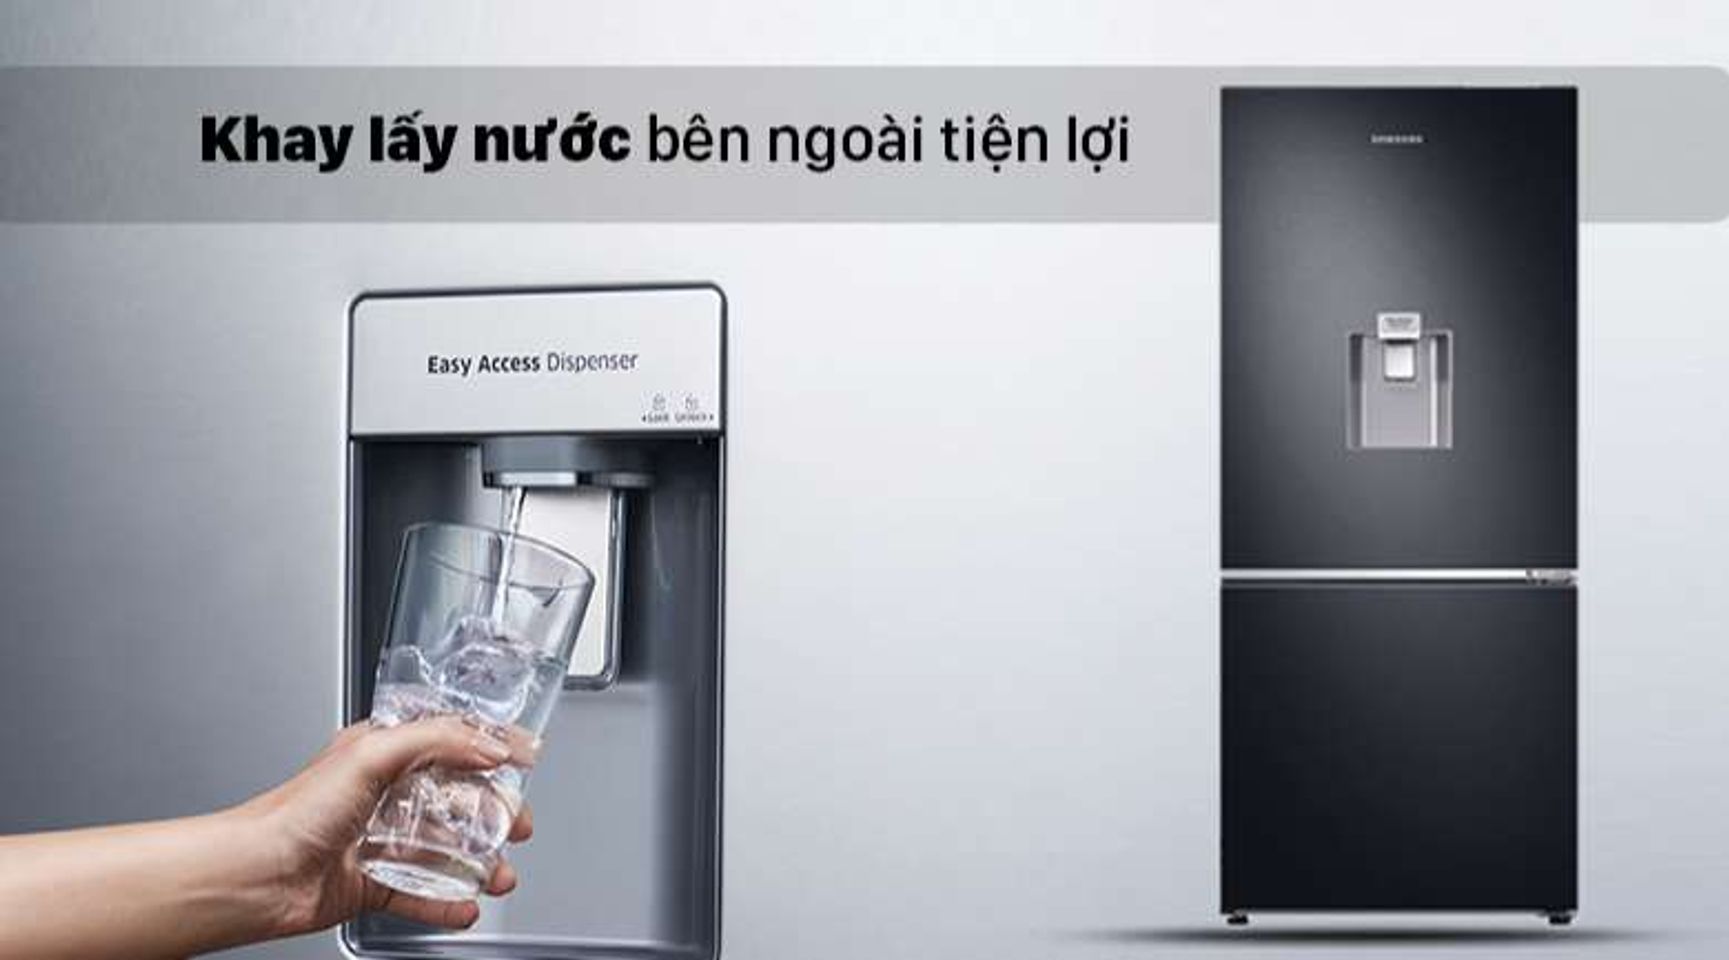 Tủ lạnh Samsung Inverter RB27N4190BU/SV có khay lấy nước tiện lợi 